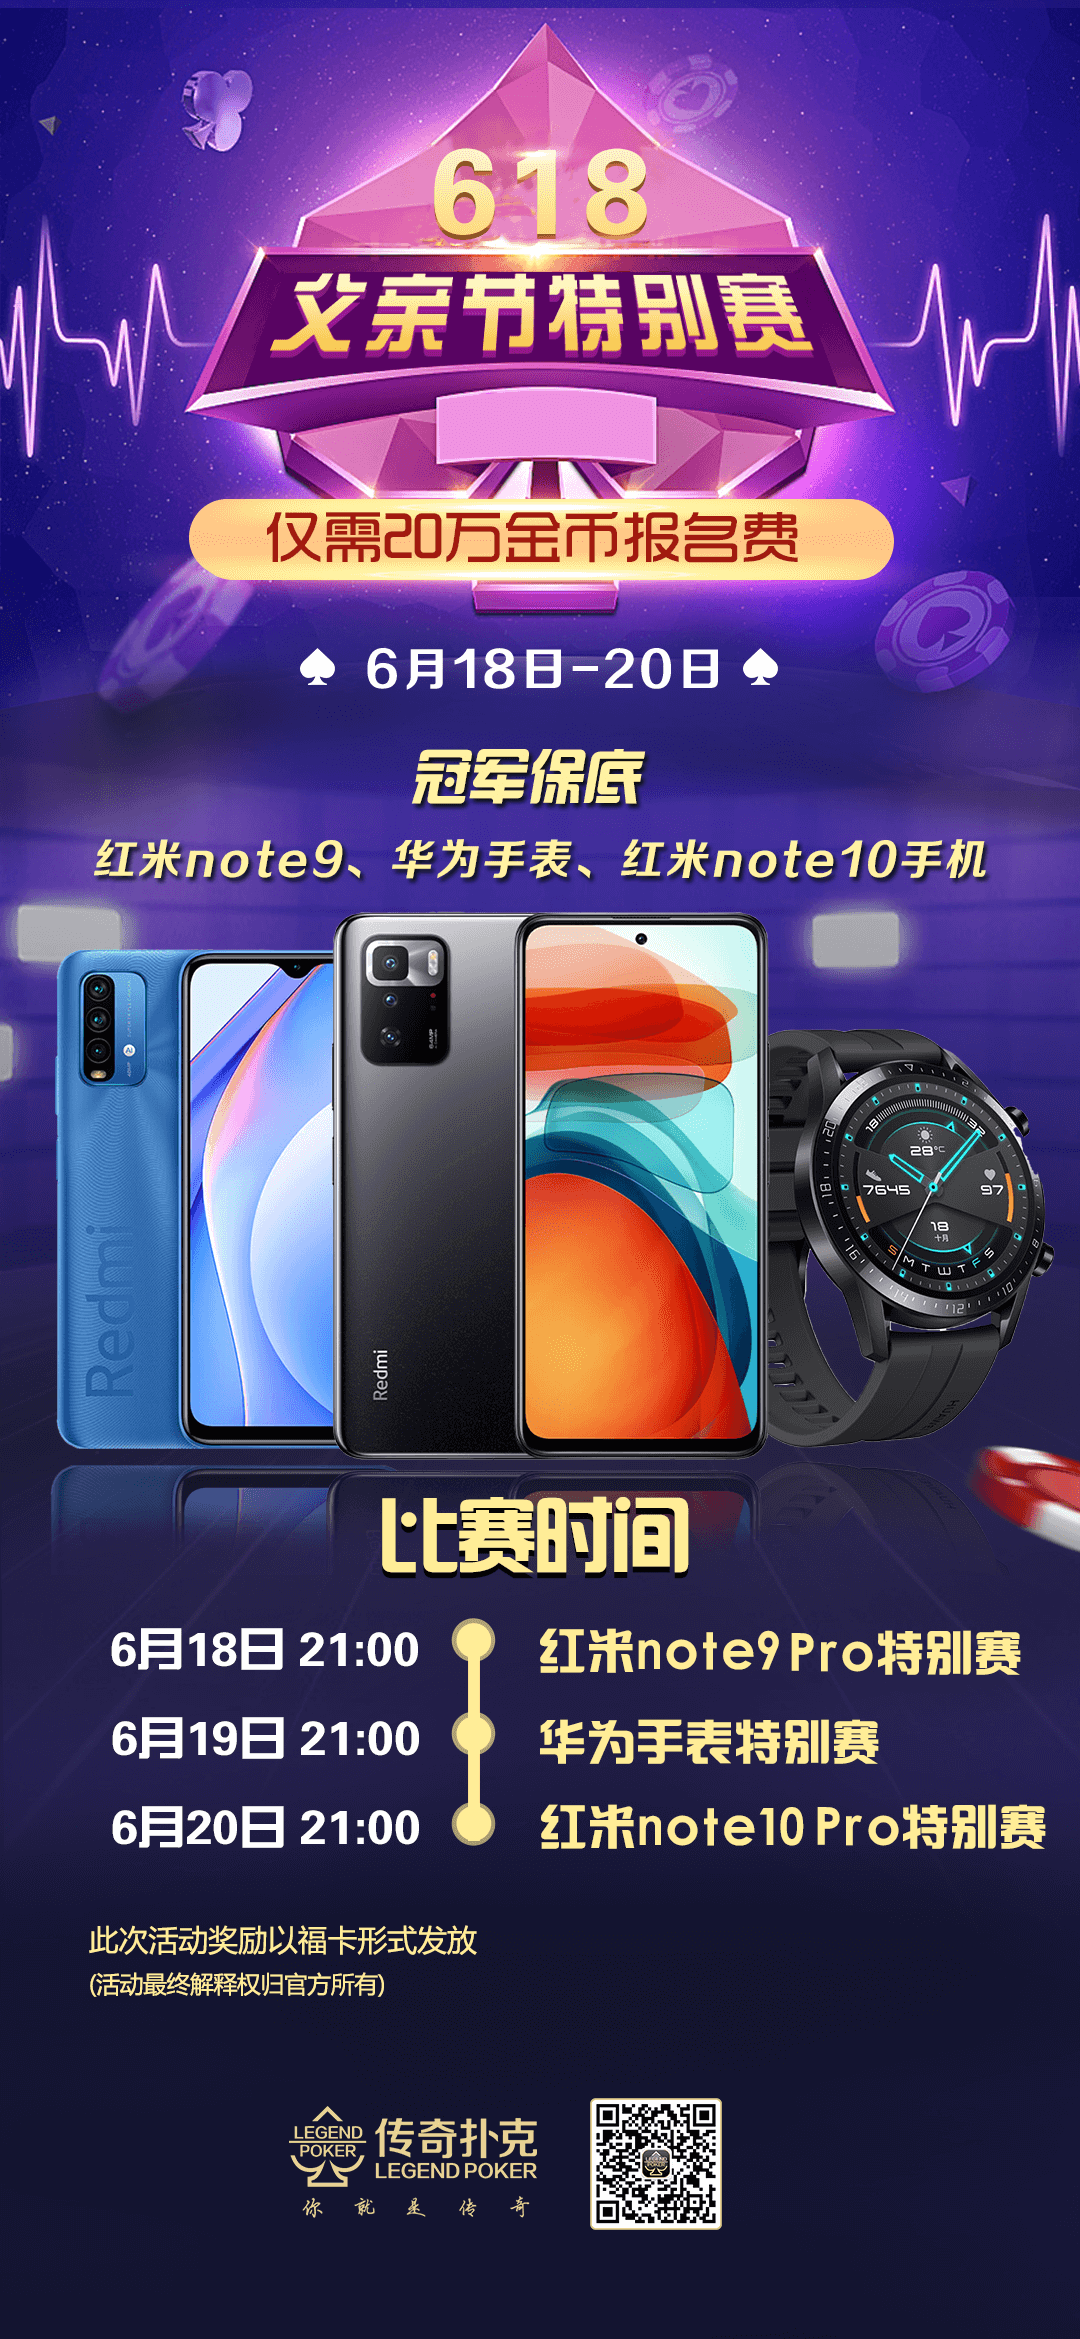 618父亲节特别赛赢红米Note10 Pro手机